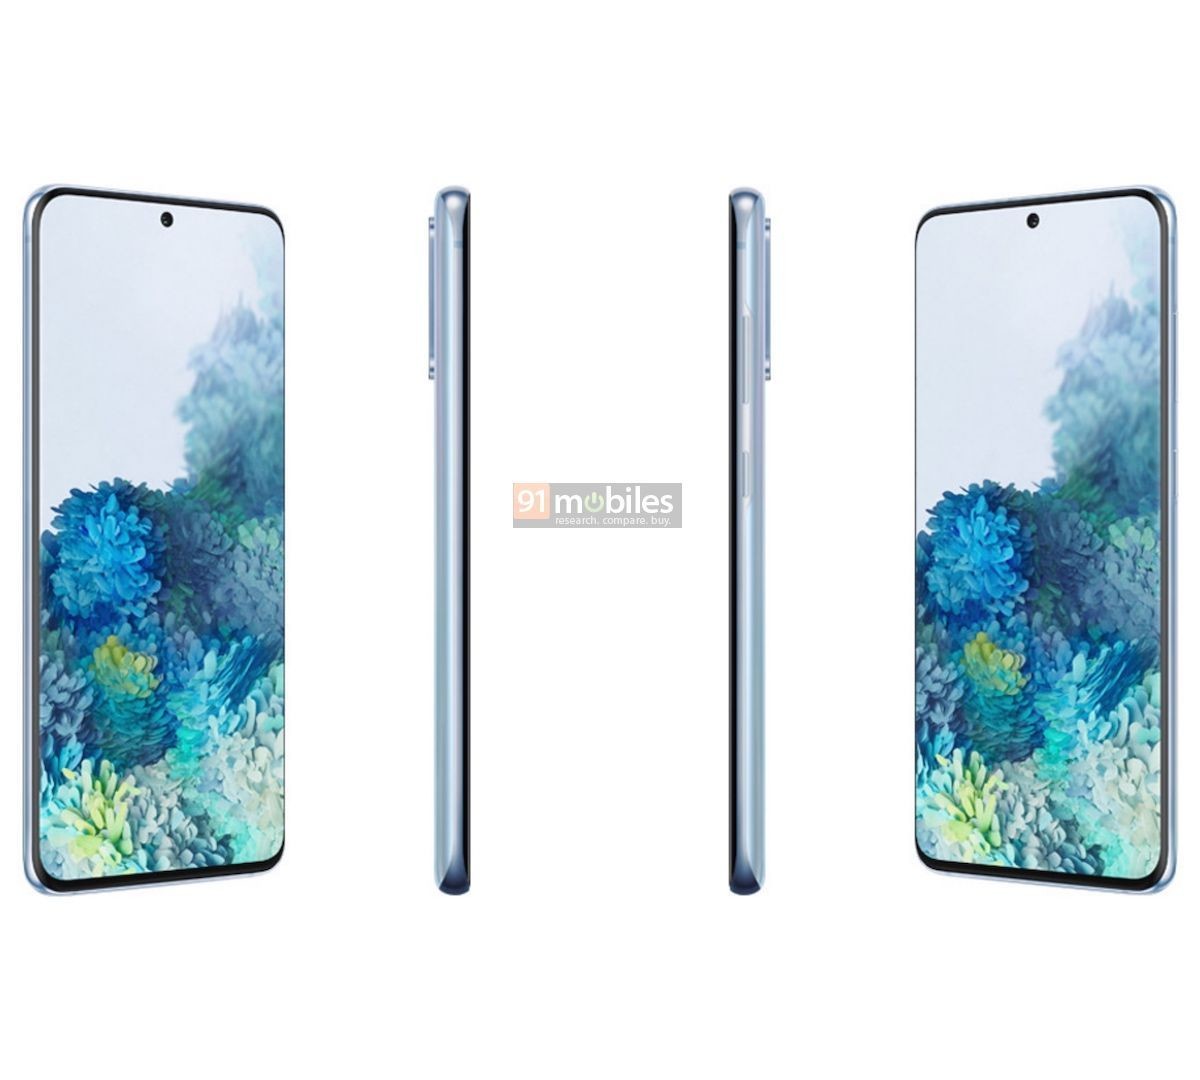 Samsung Galaxy S20 : les trois références pointées sur Geekbench avec 12 Go de RAM